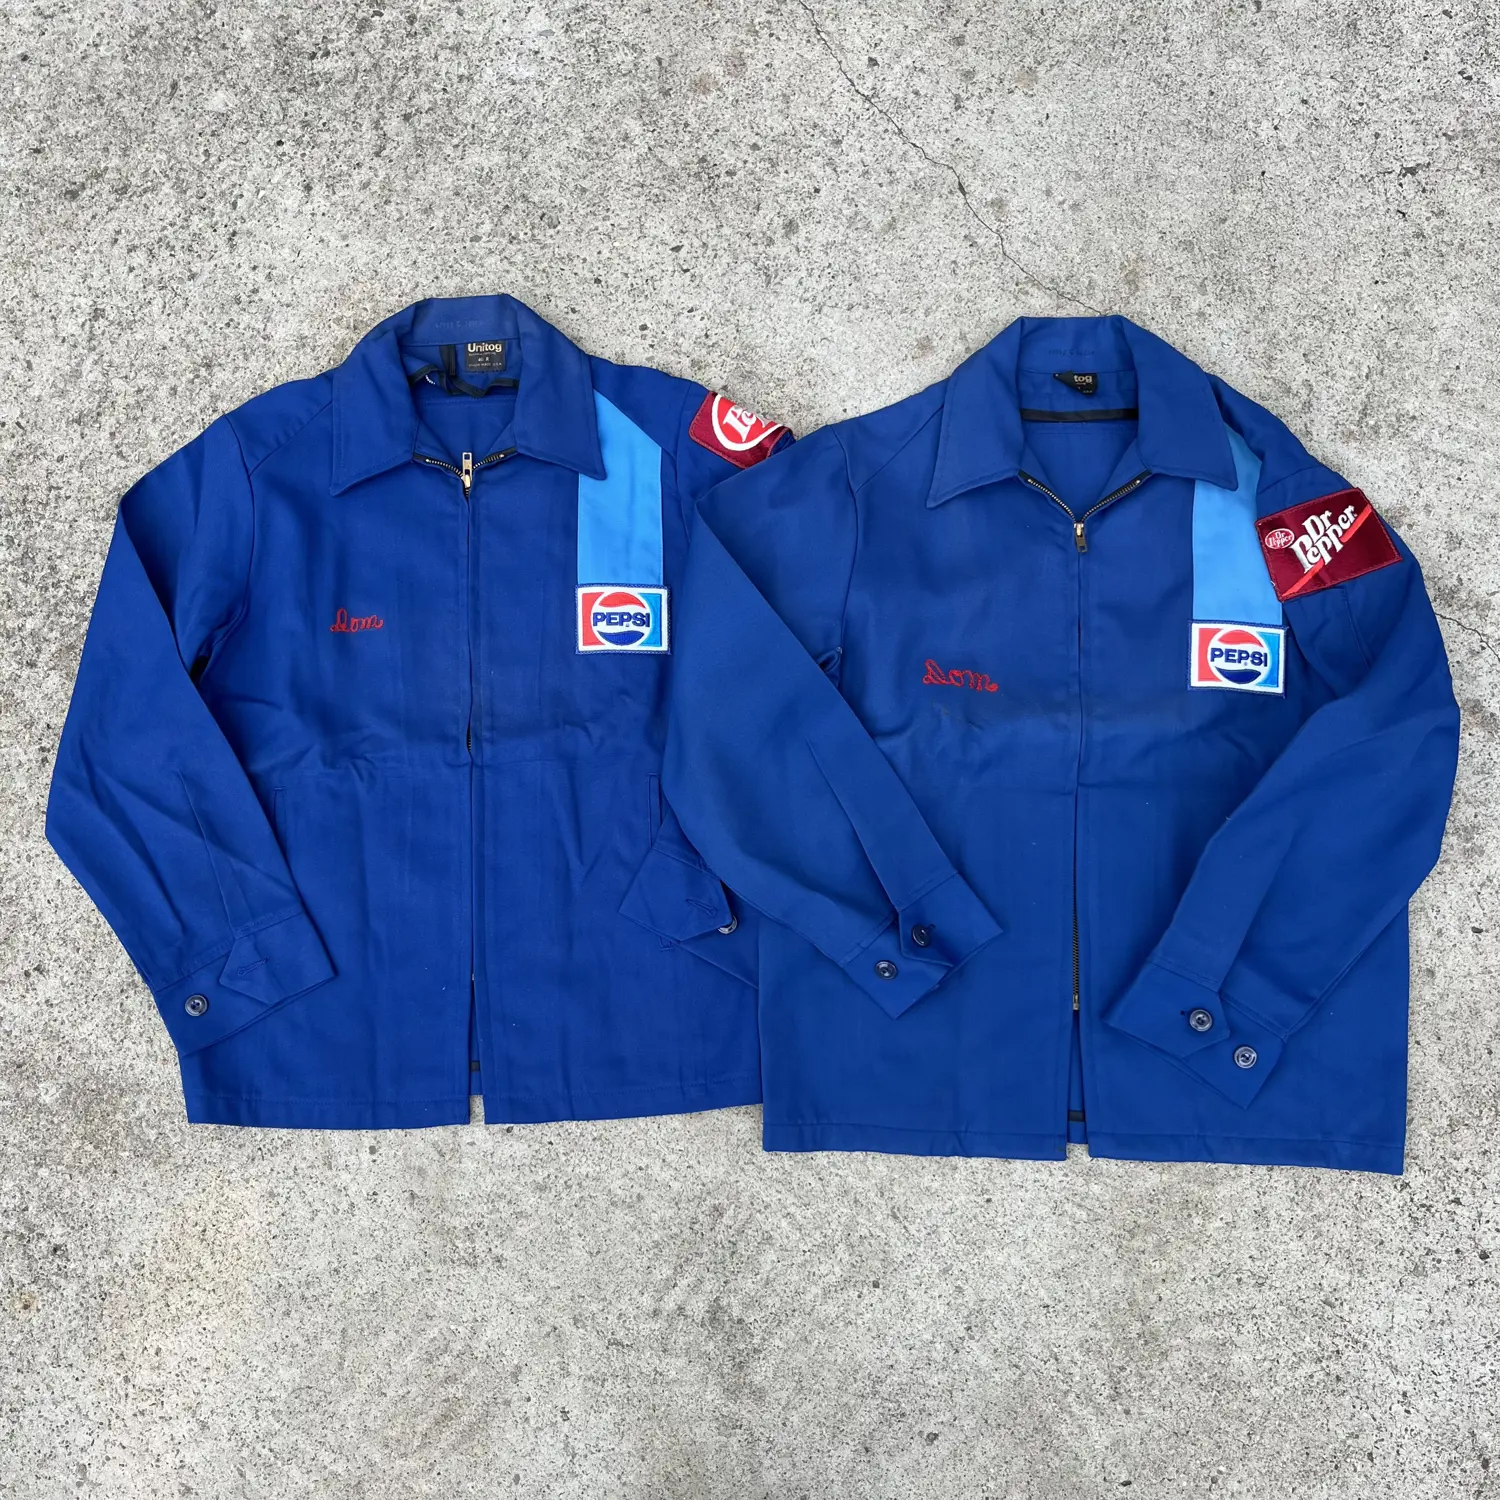 Vintage 1970’s Pepsi Workwear Jackets